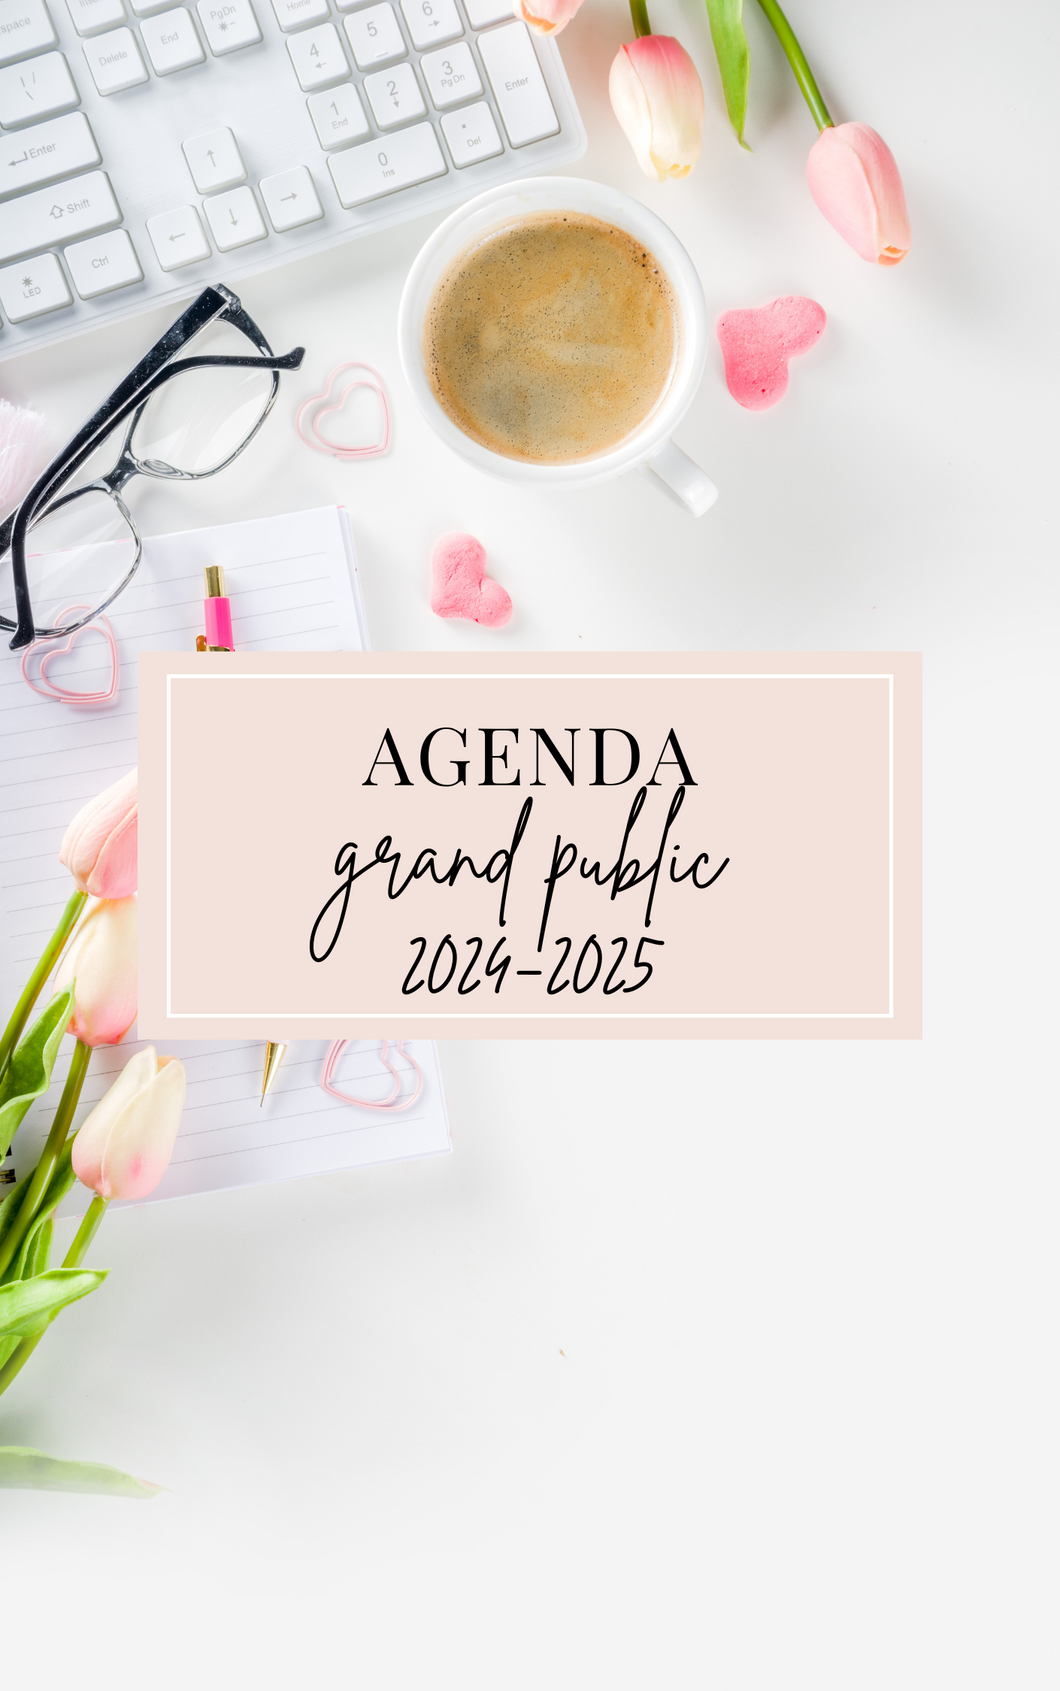 Agenda grand public 2024-2025